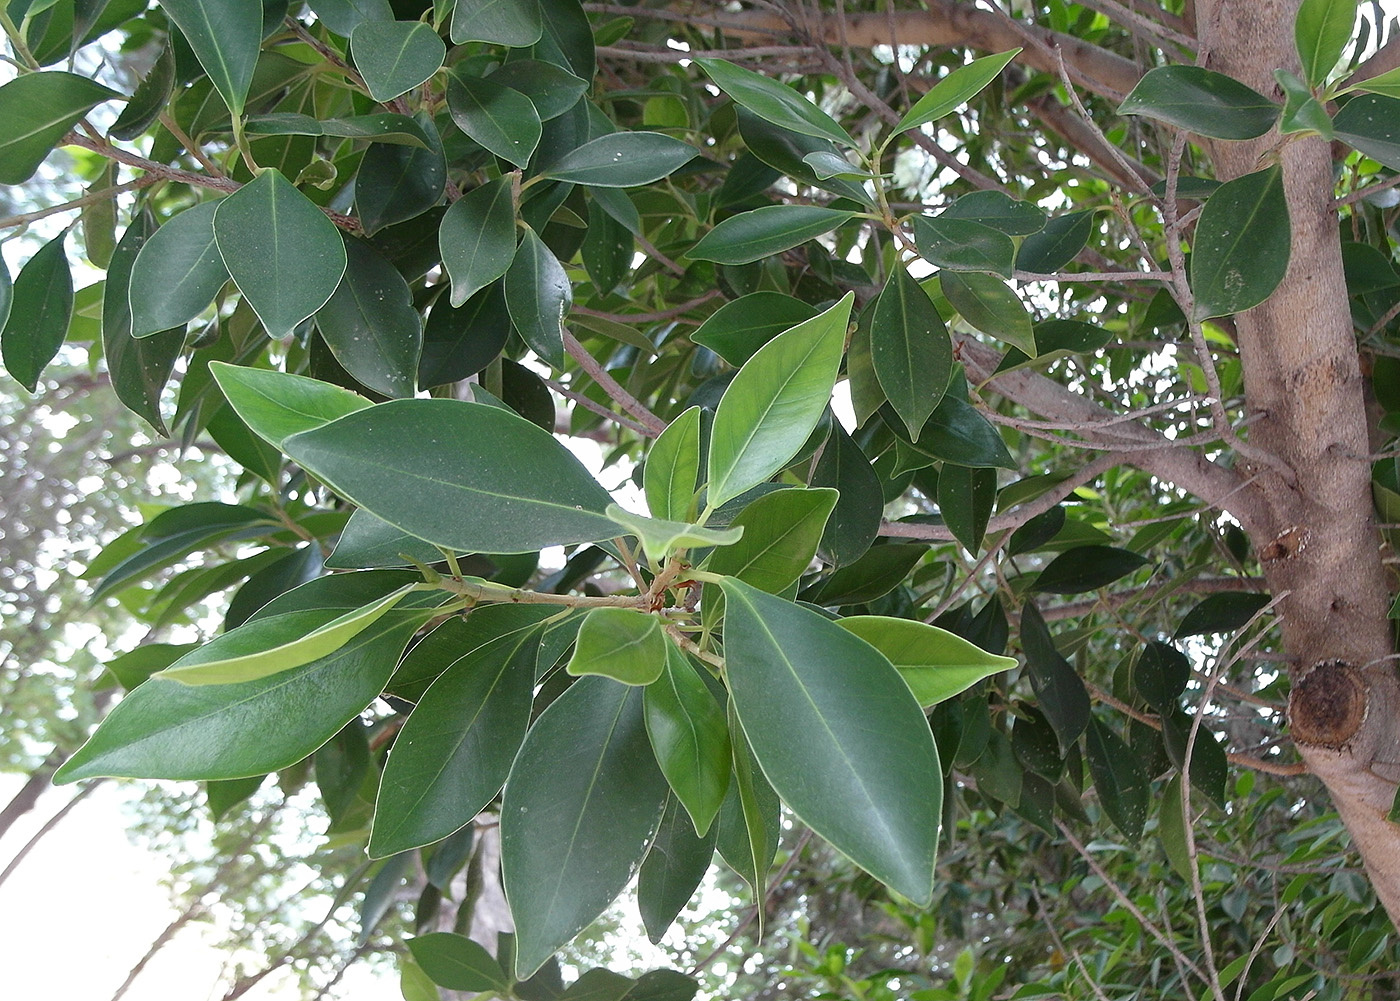 Image of genus Ficus specimen.